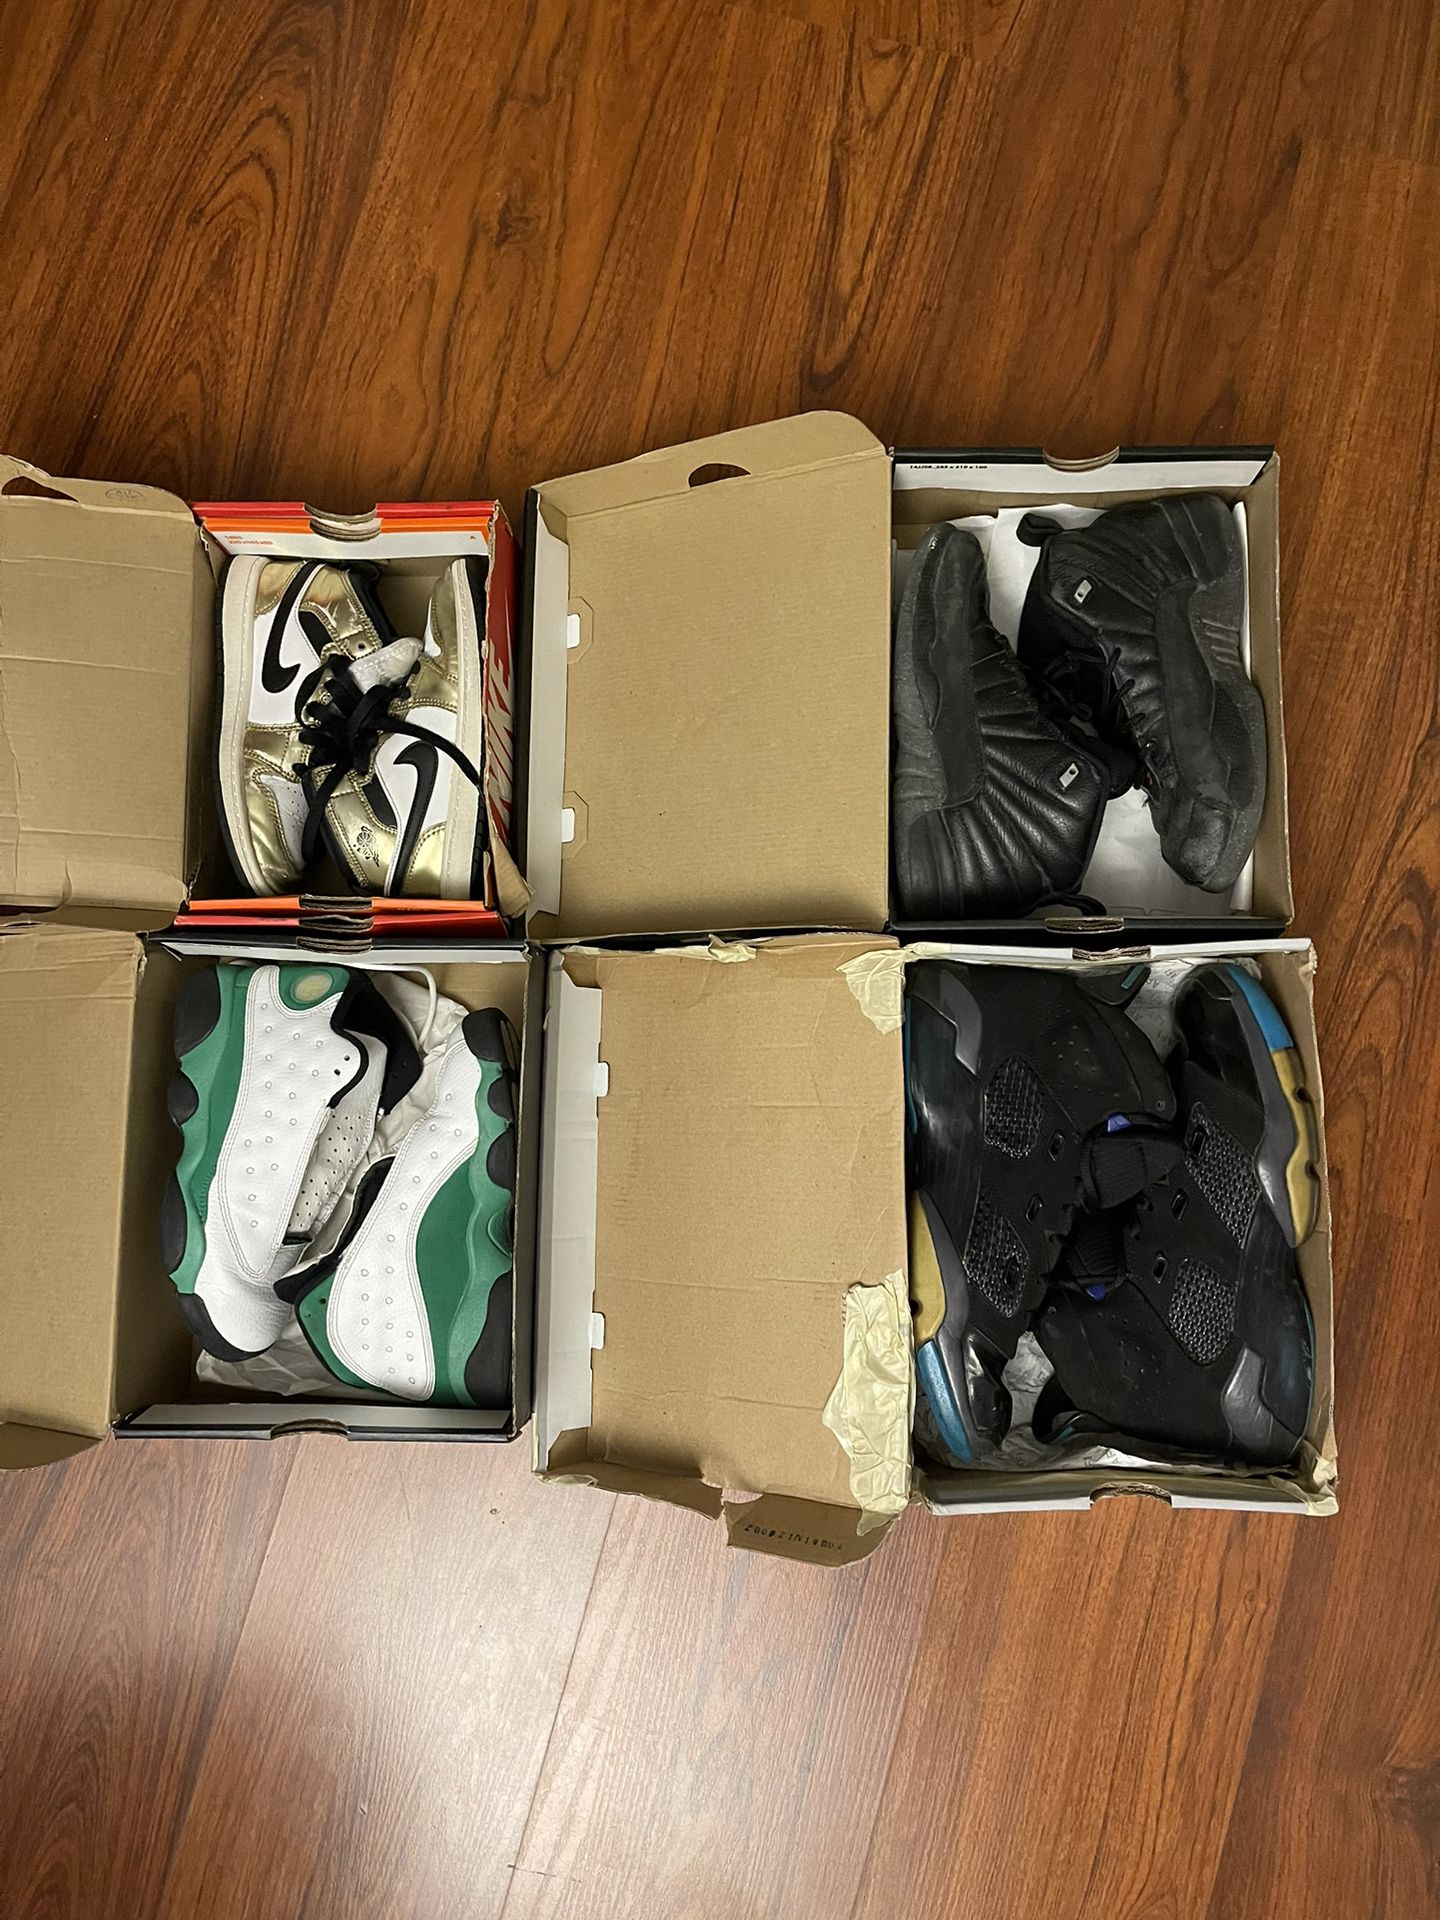 Jordans For Sale